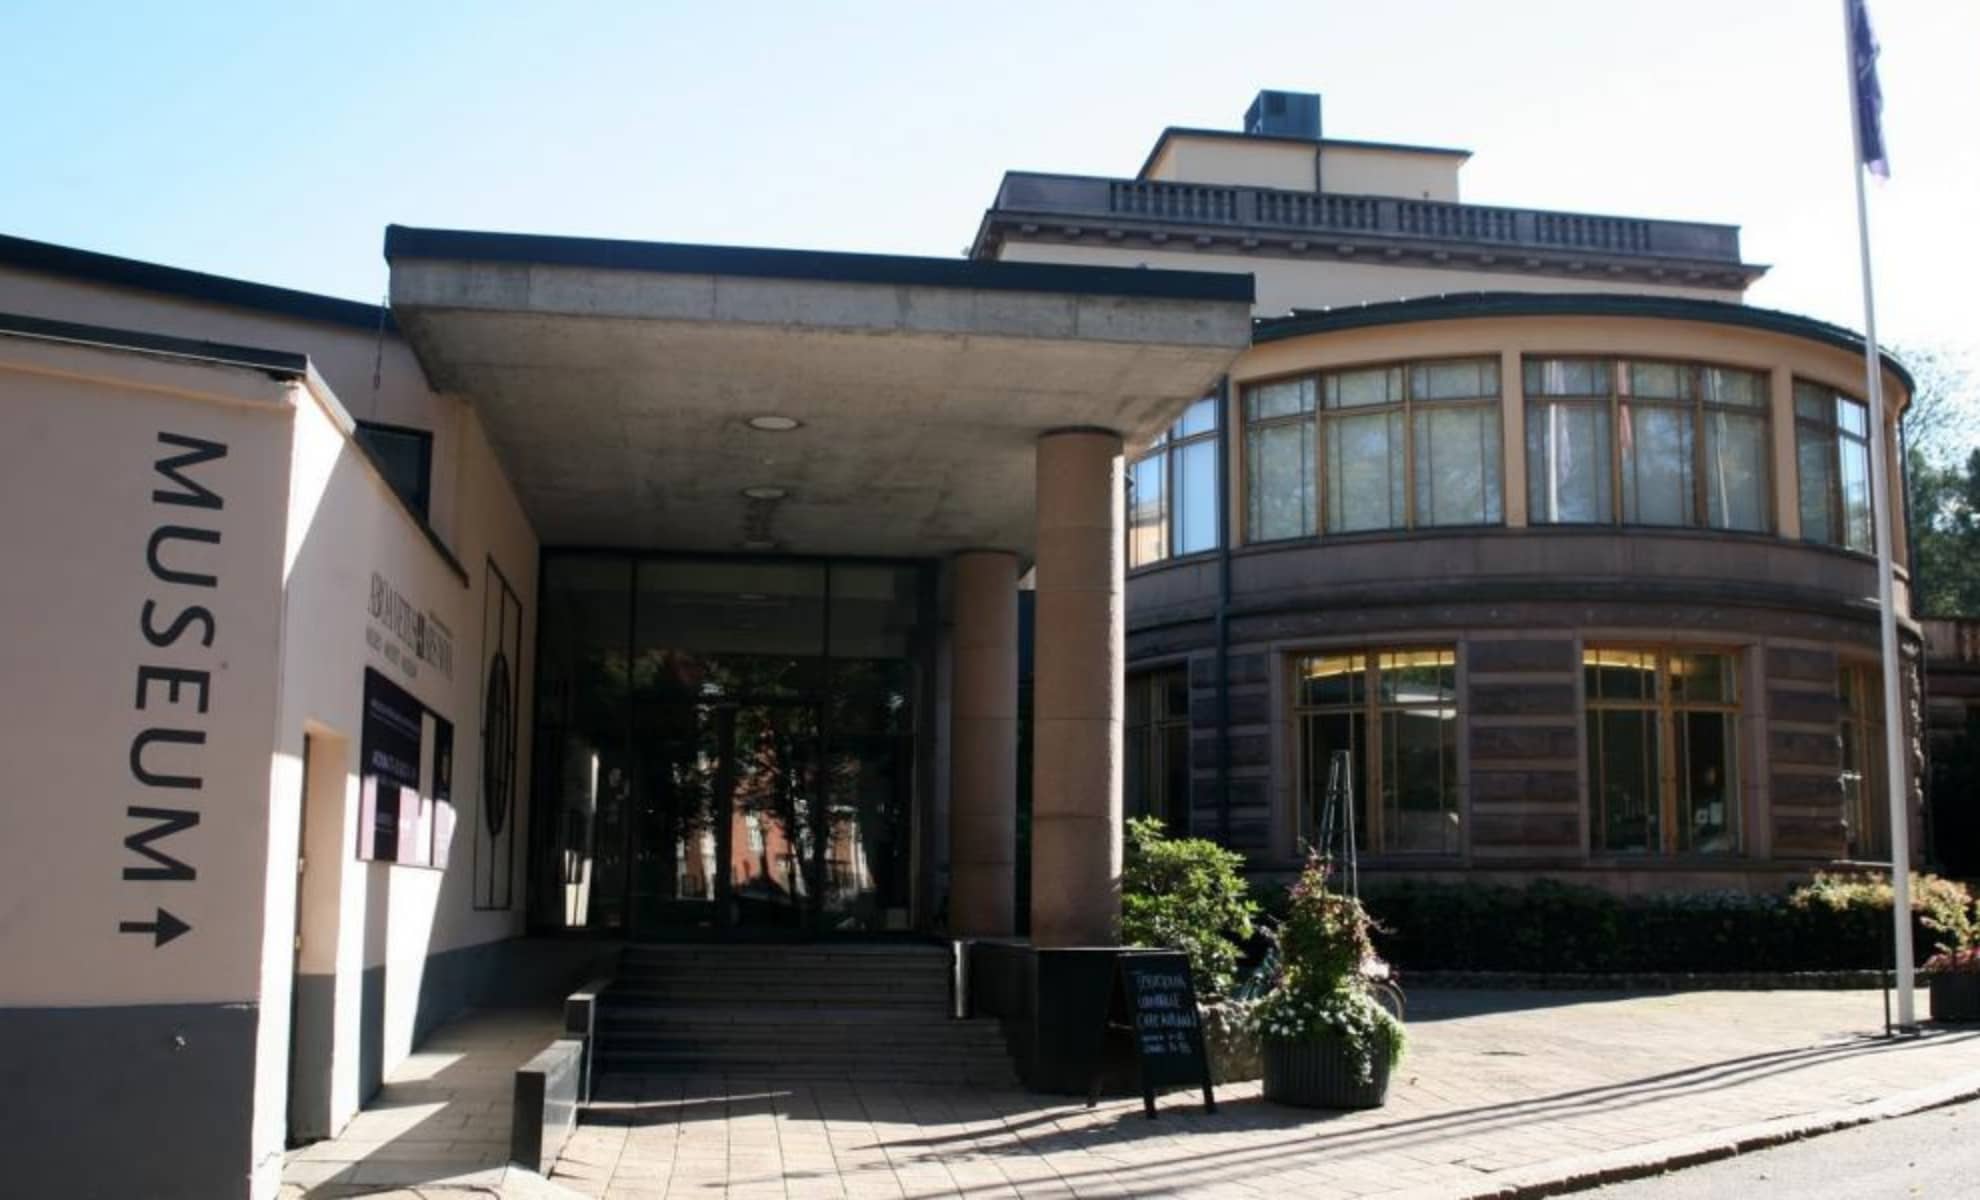 Le musée Aboa Vetus Ars Nova, Turku